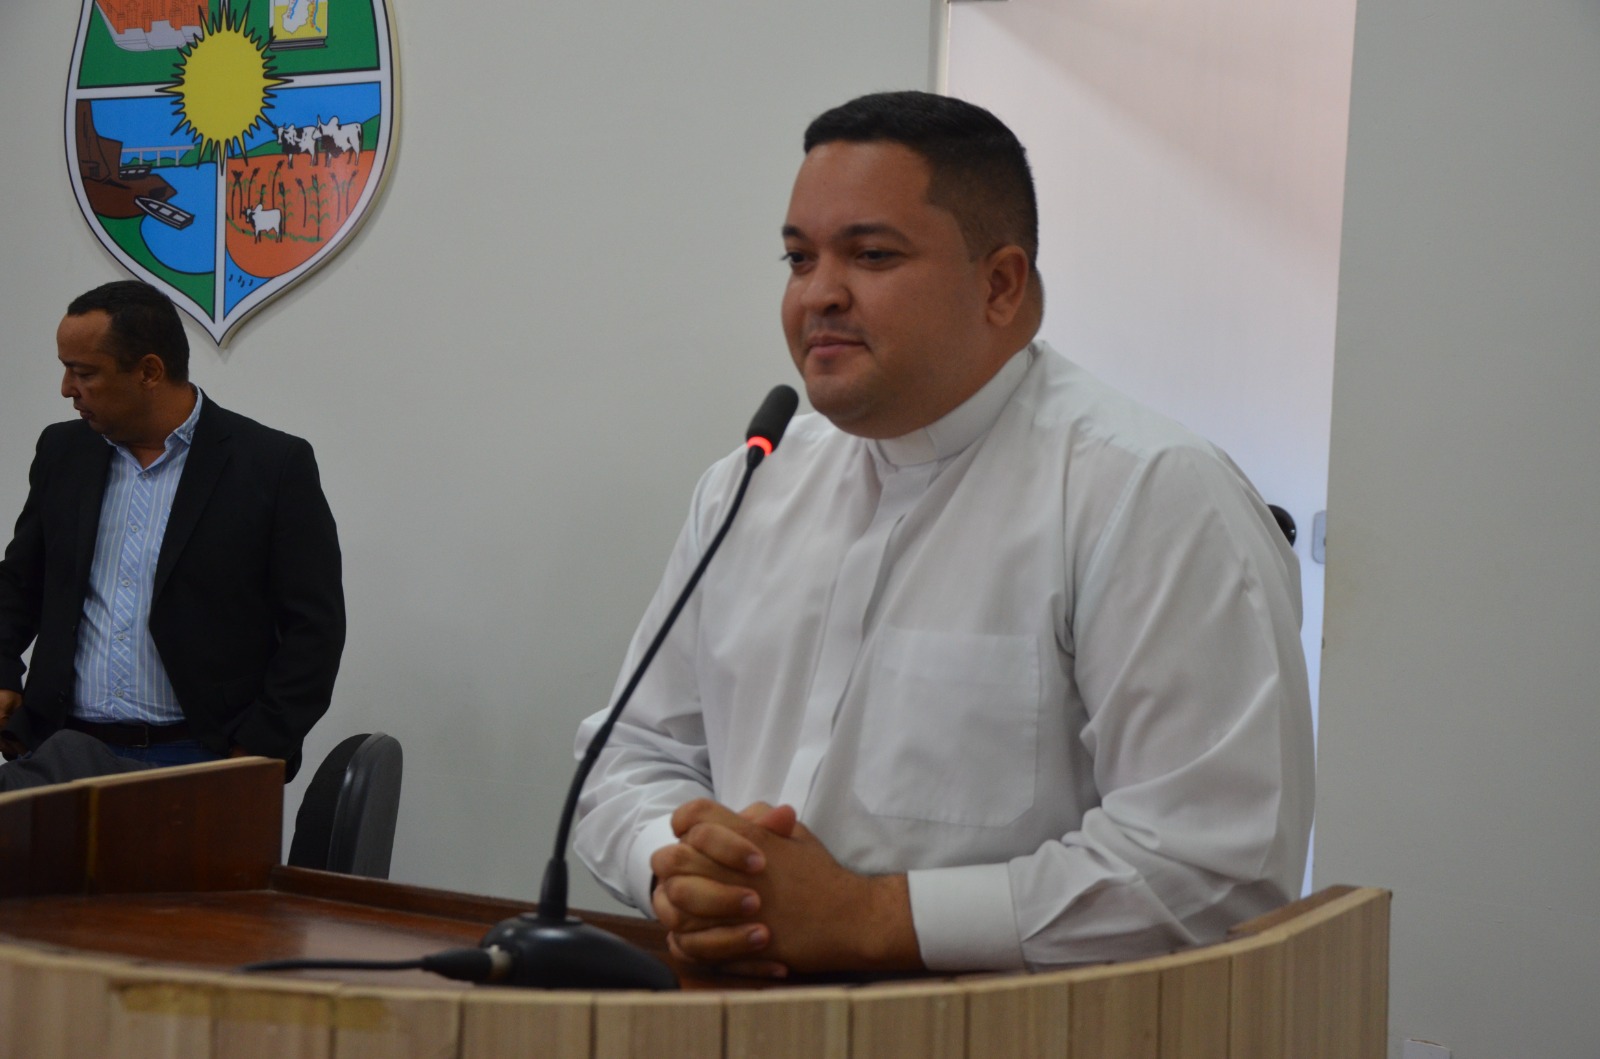 Câmara Municipal aprova PL que autoriza doação de área para Capelinha Coração de Maria 